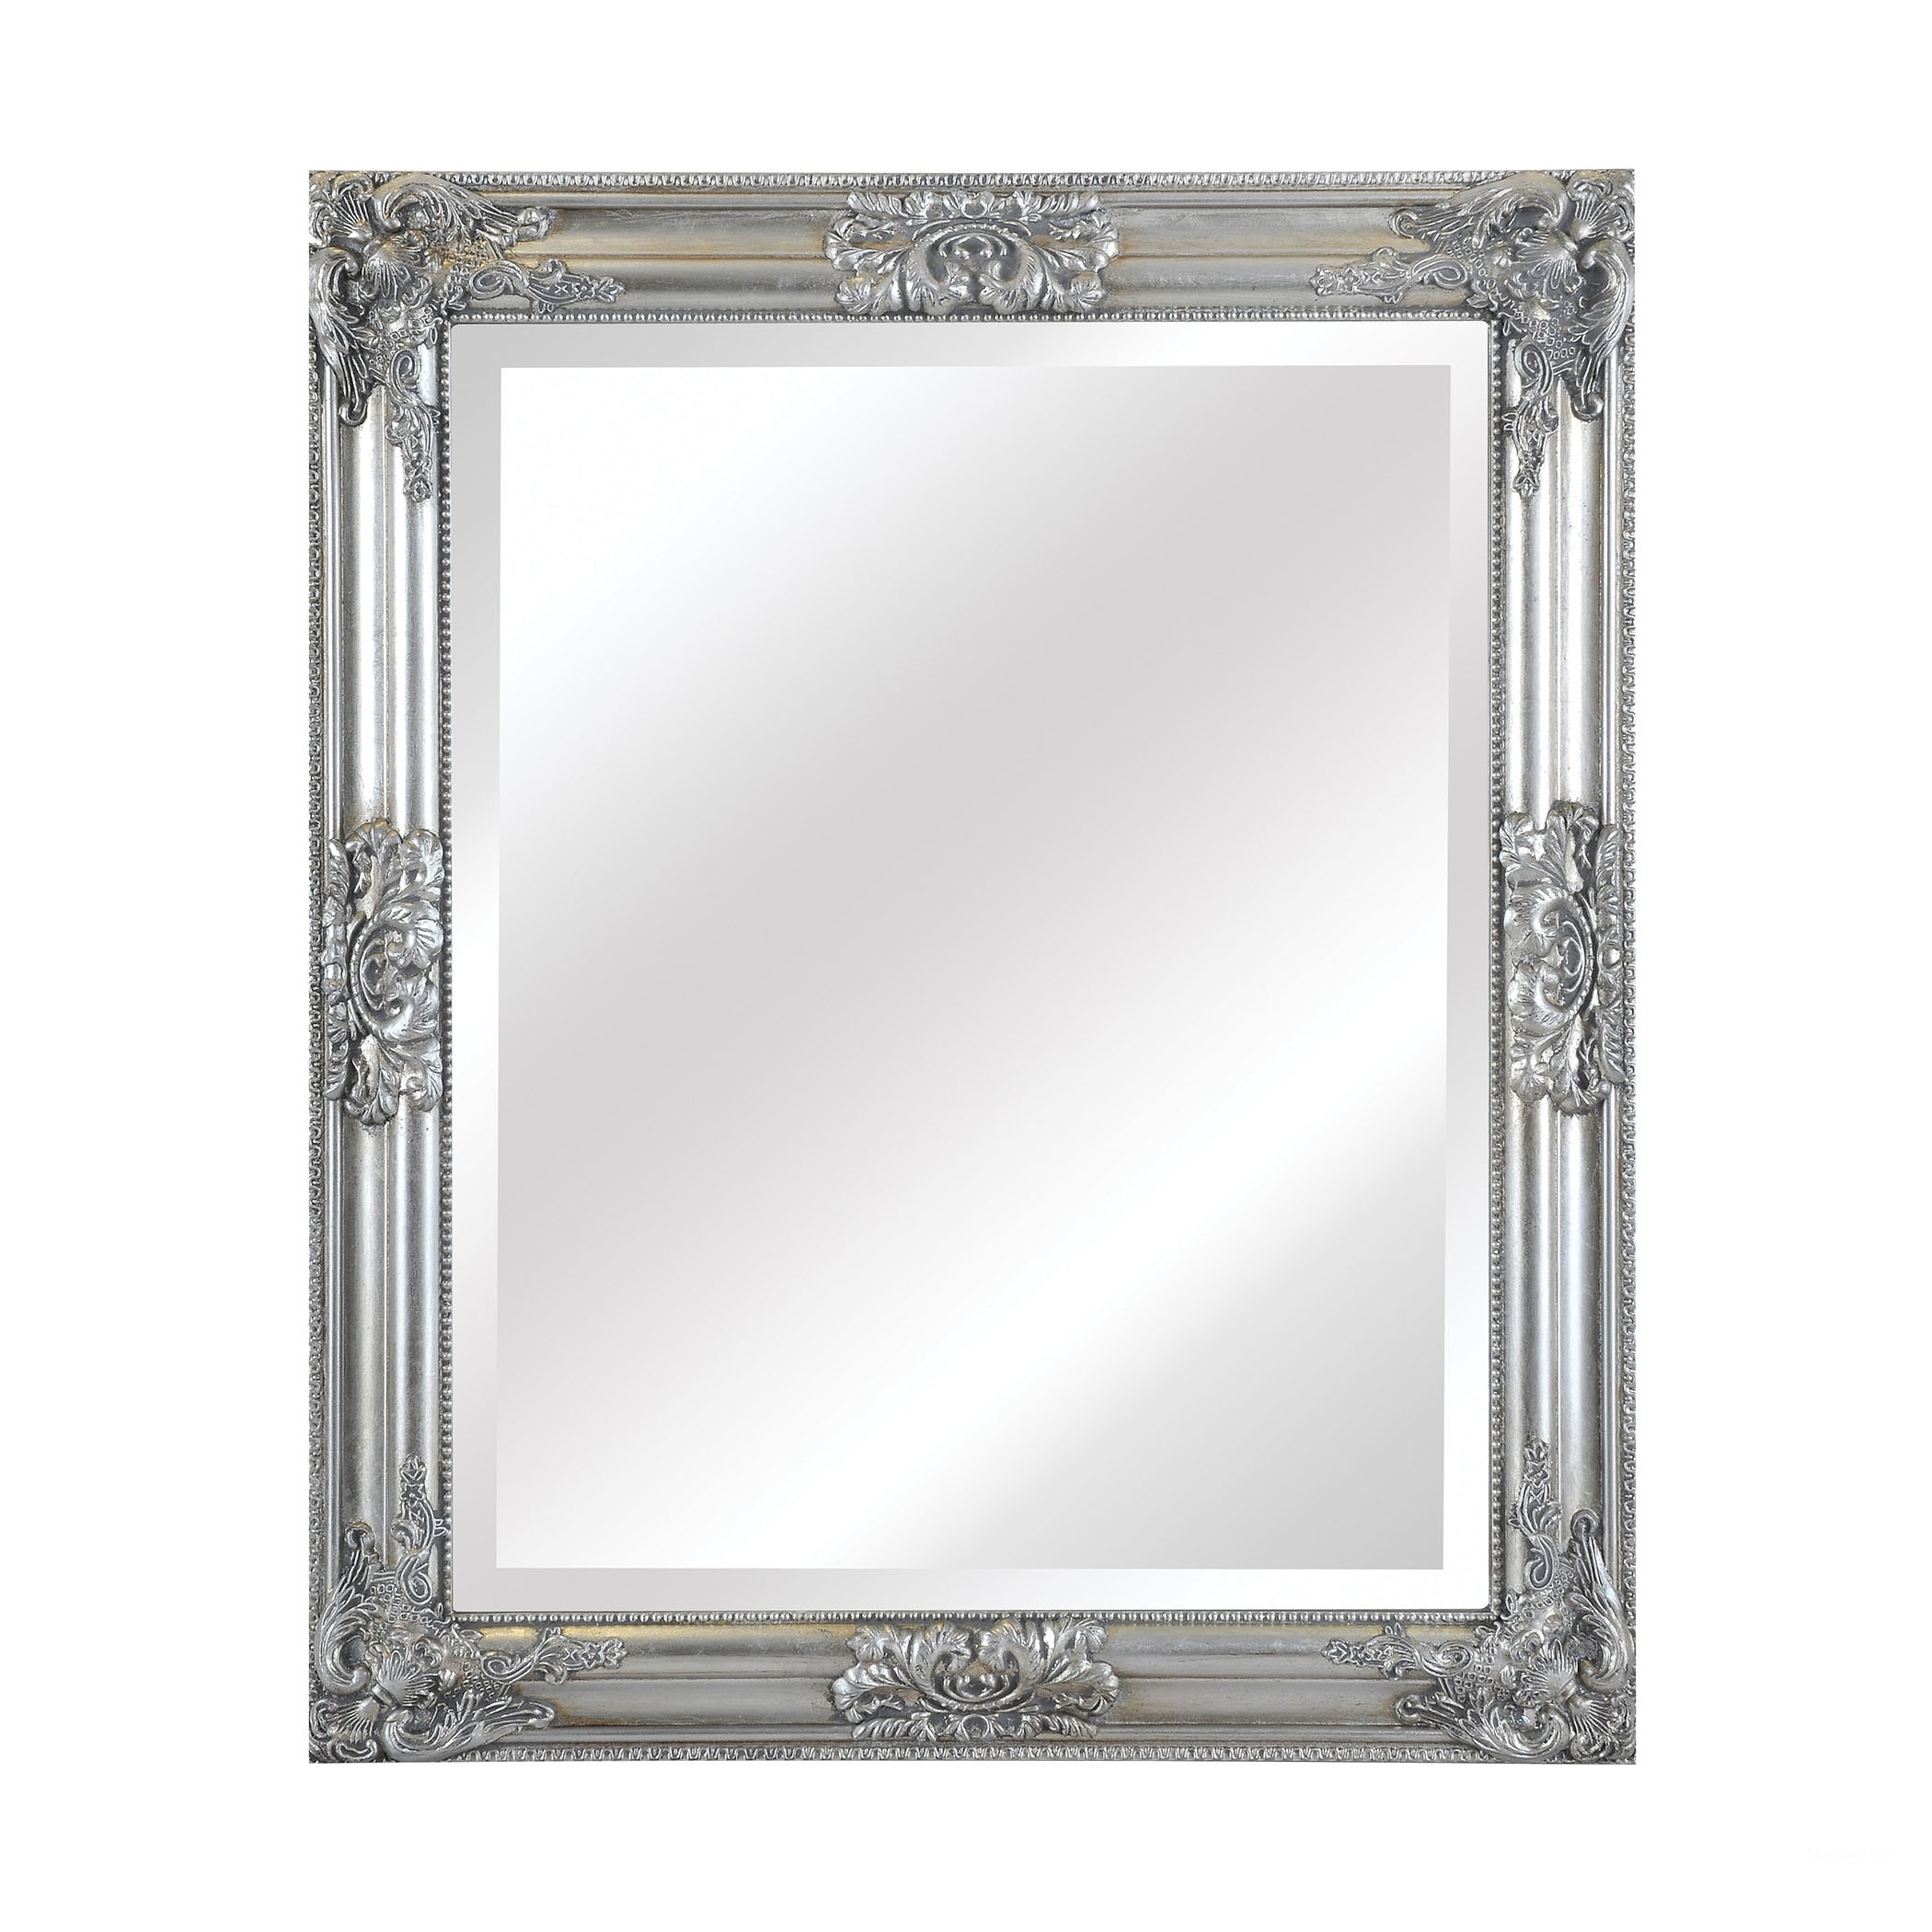 Мастер зеркал 3. Silver frame.